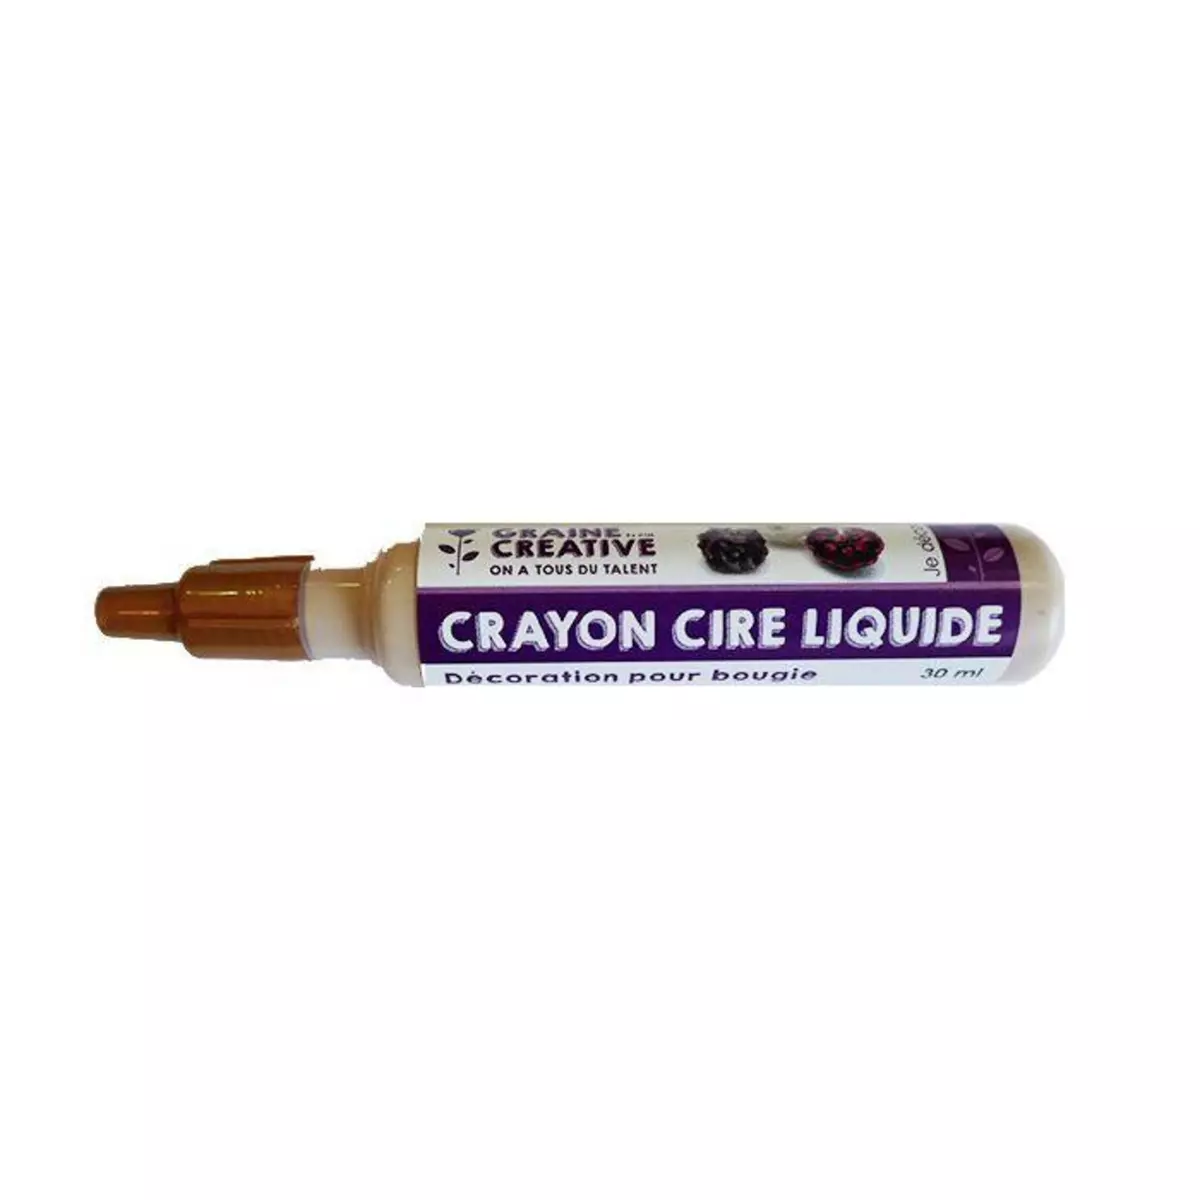 Graine créative Crayon cire liquide pour bougie - Doré